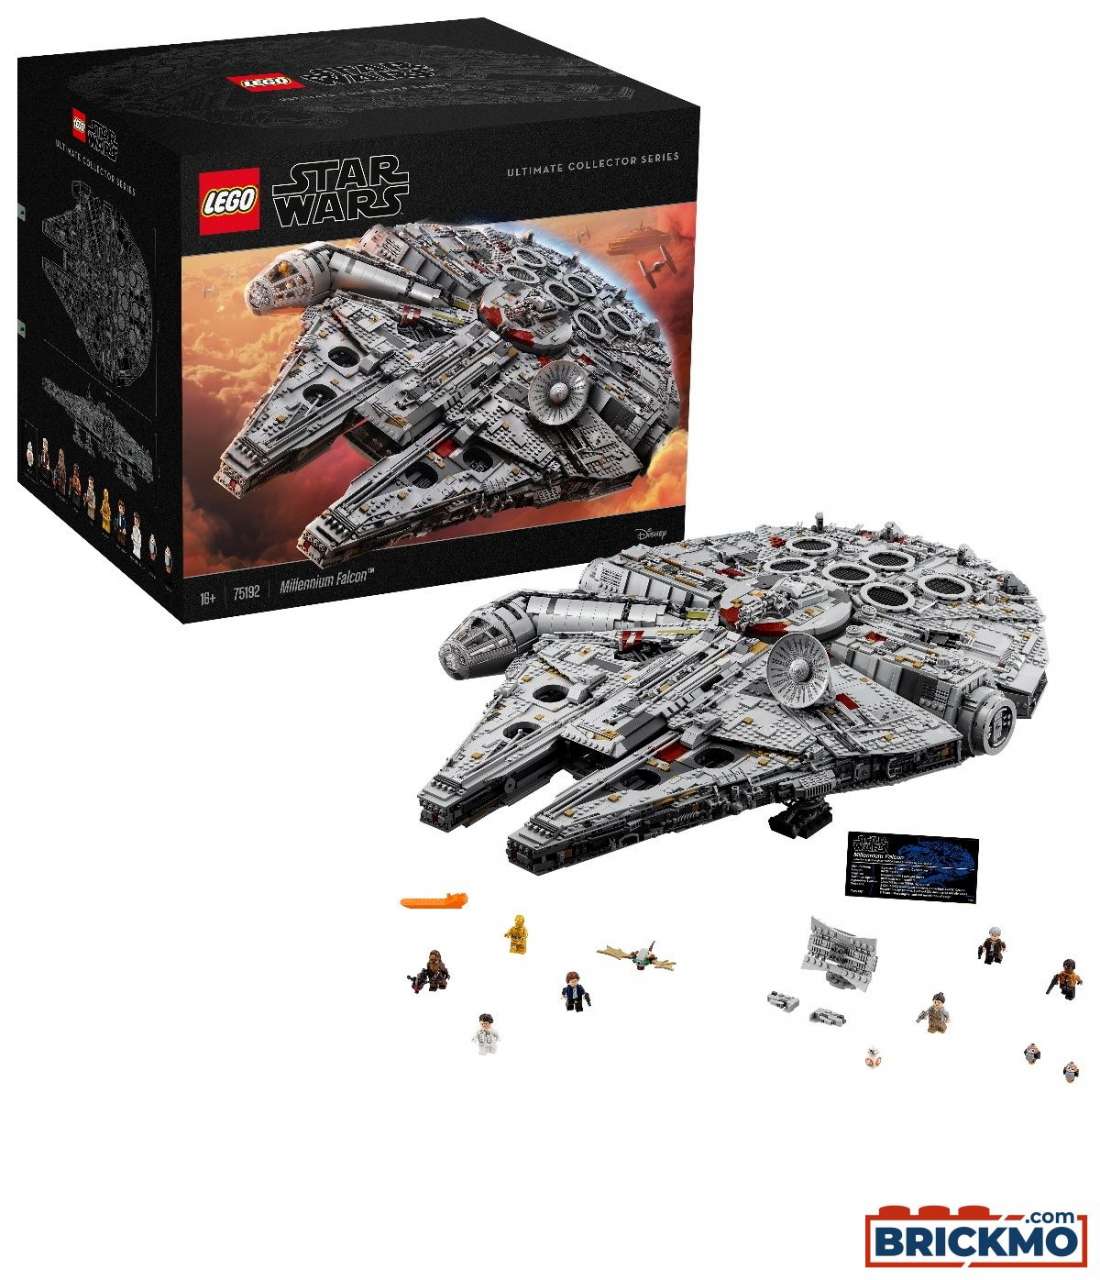 LEGO Star Wars 75192 Millennium Falcon 75192